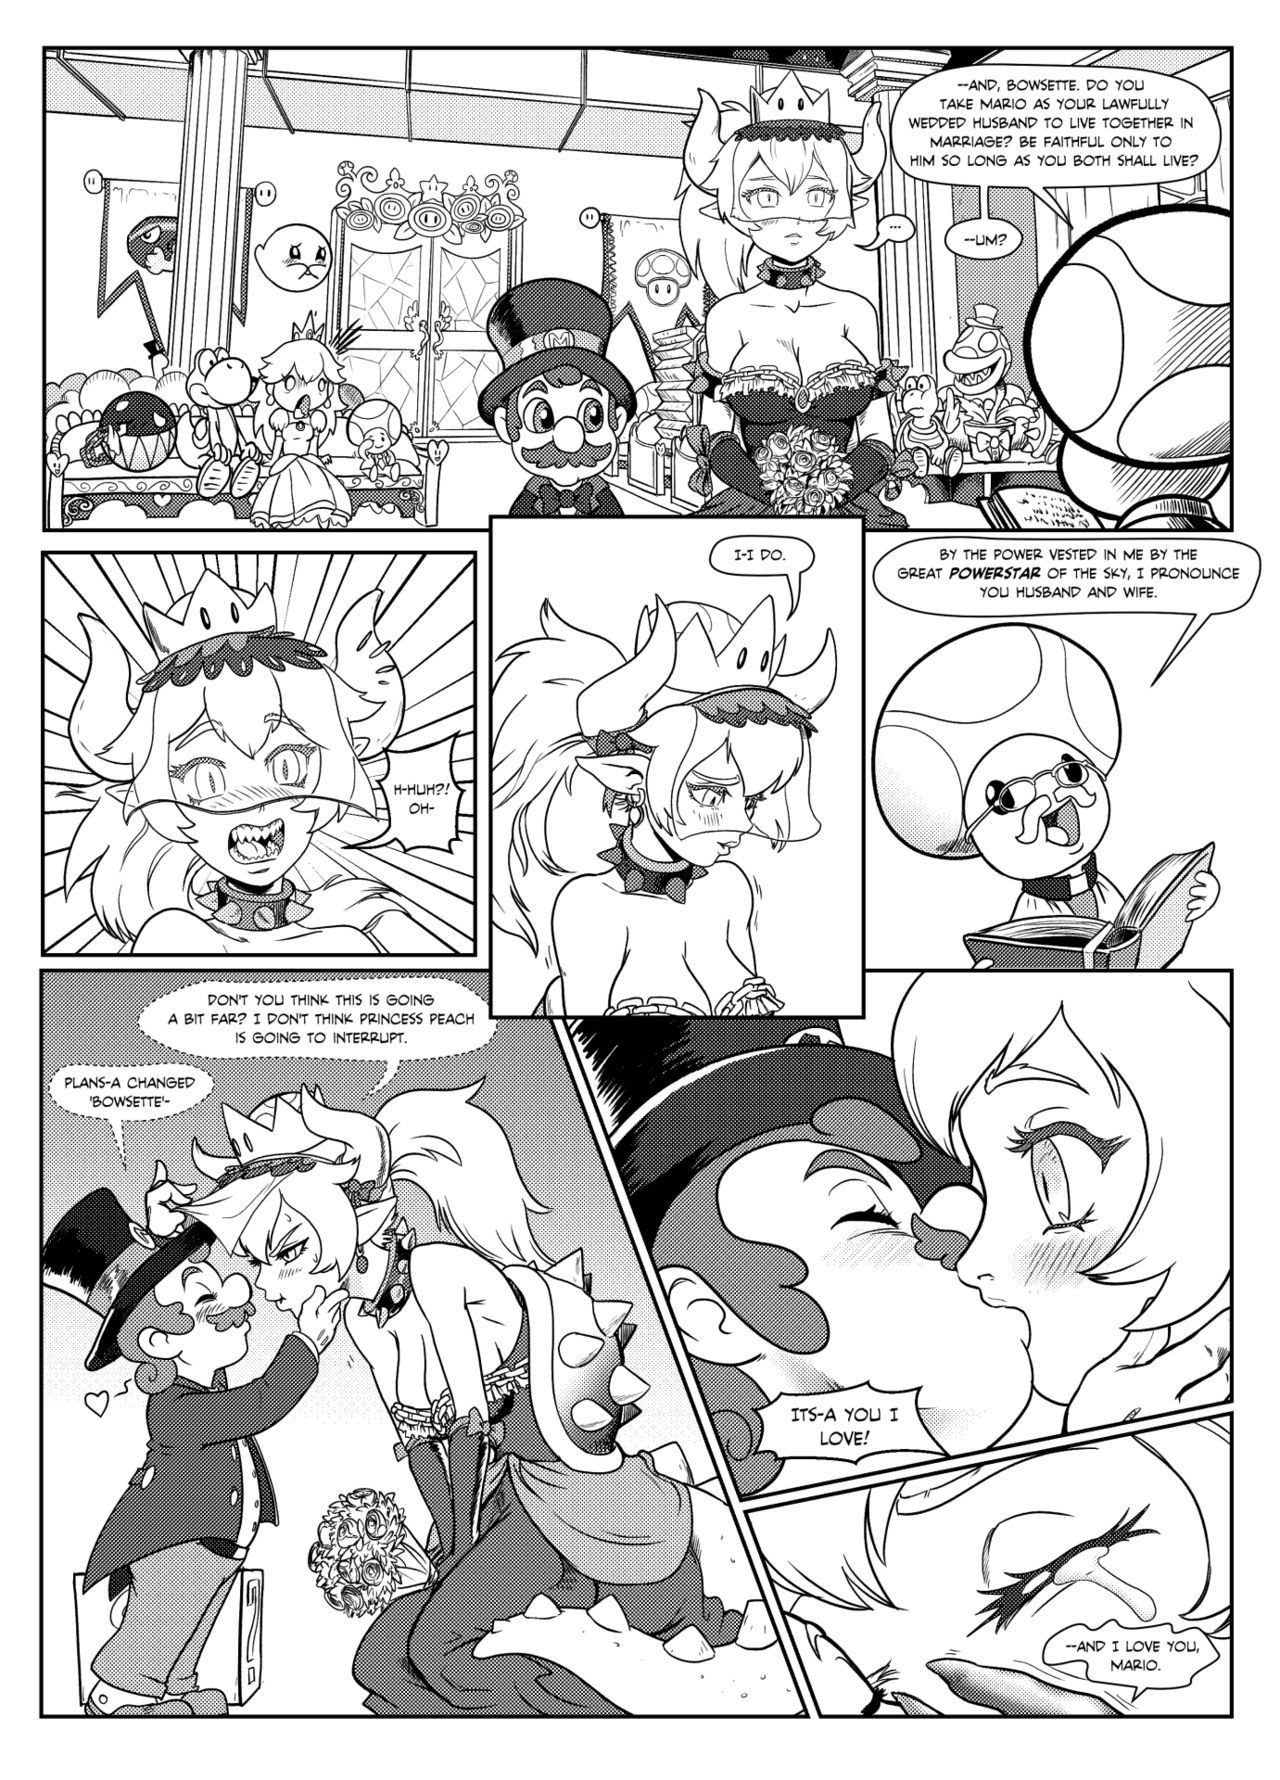 [Pencils] Bowsette Saga (Mario Bros.) (ongoing) [English] 2